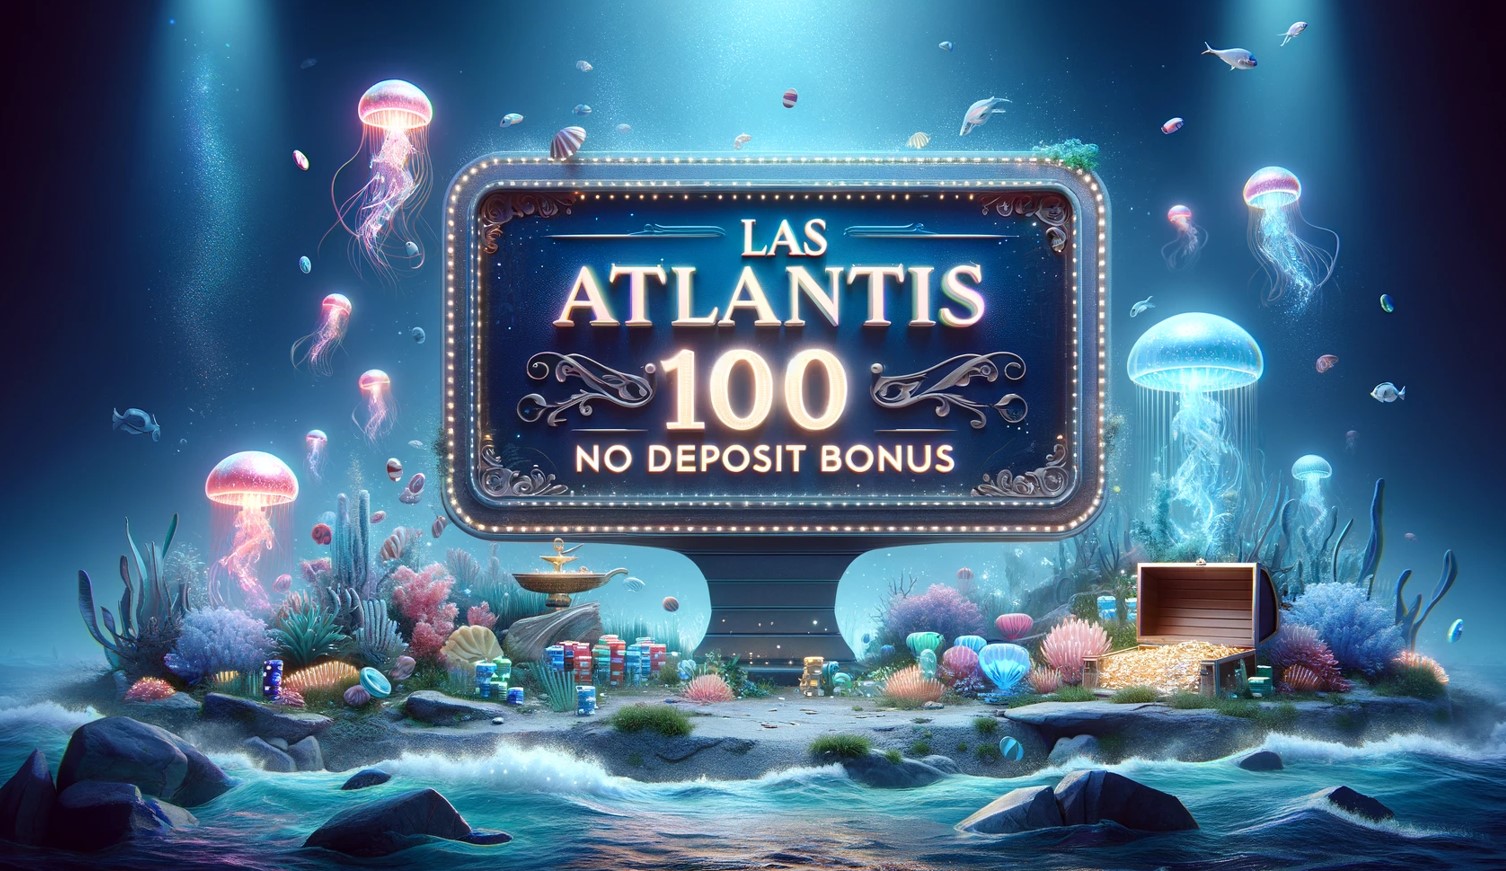 Las Atlantis casino 100 no deposit bonus 1